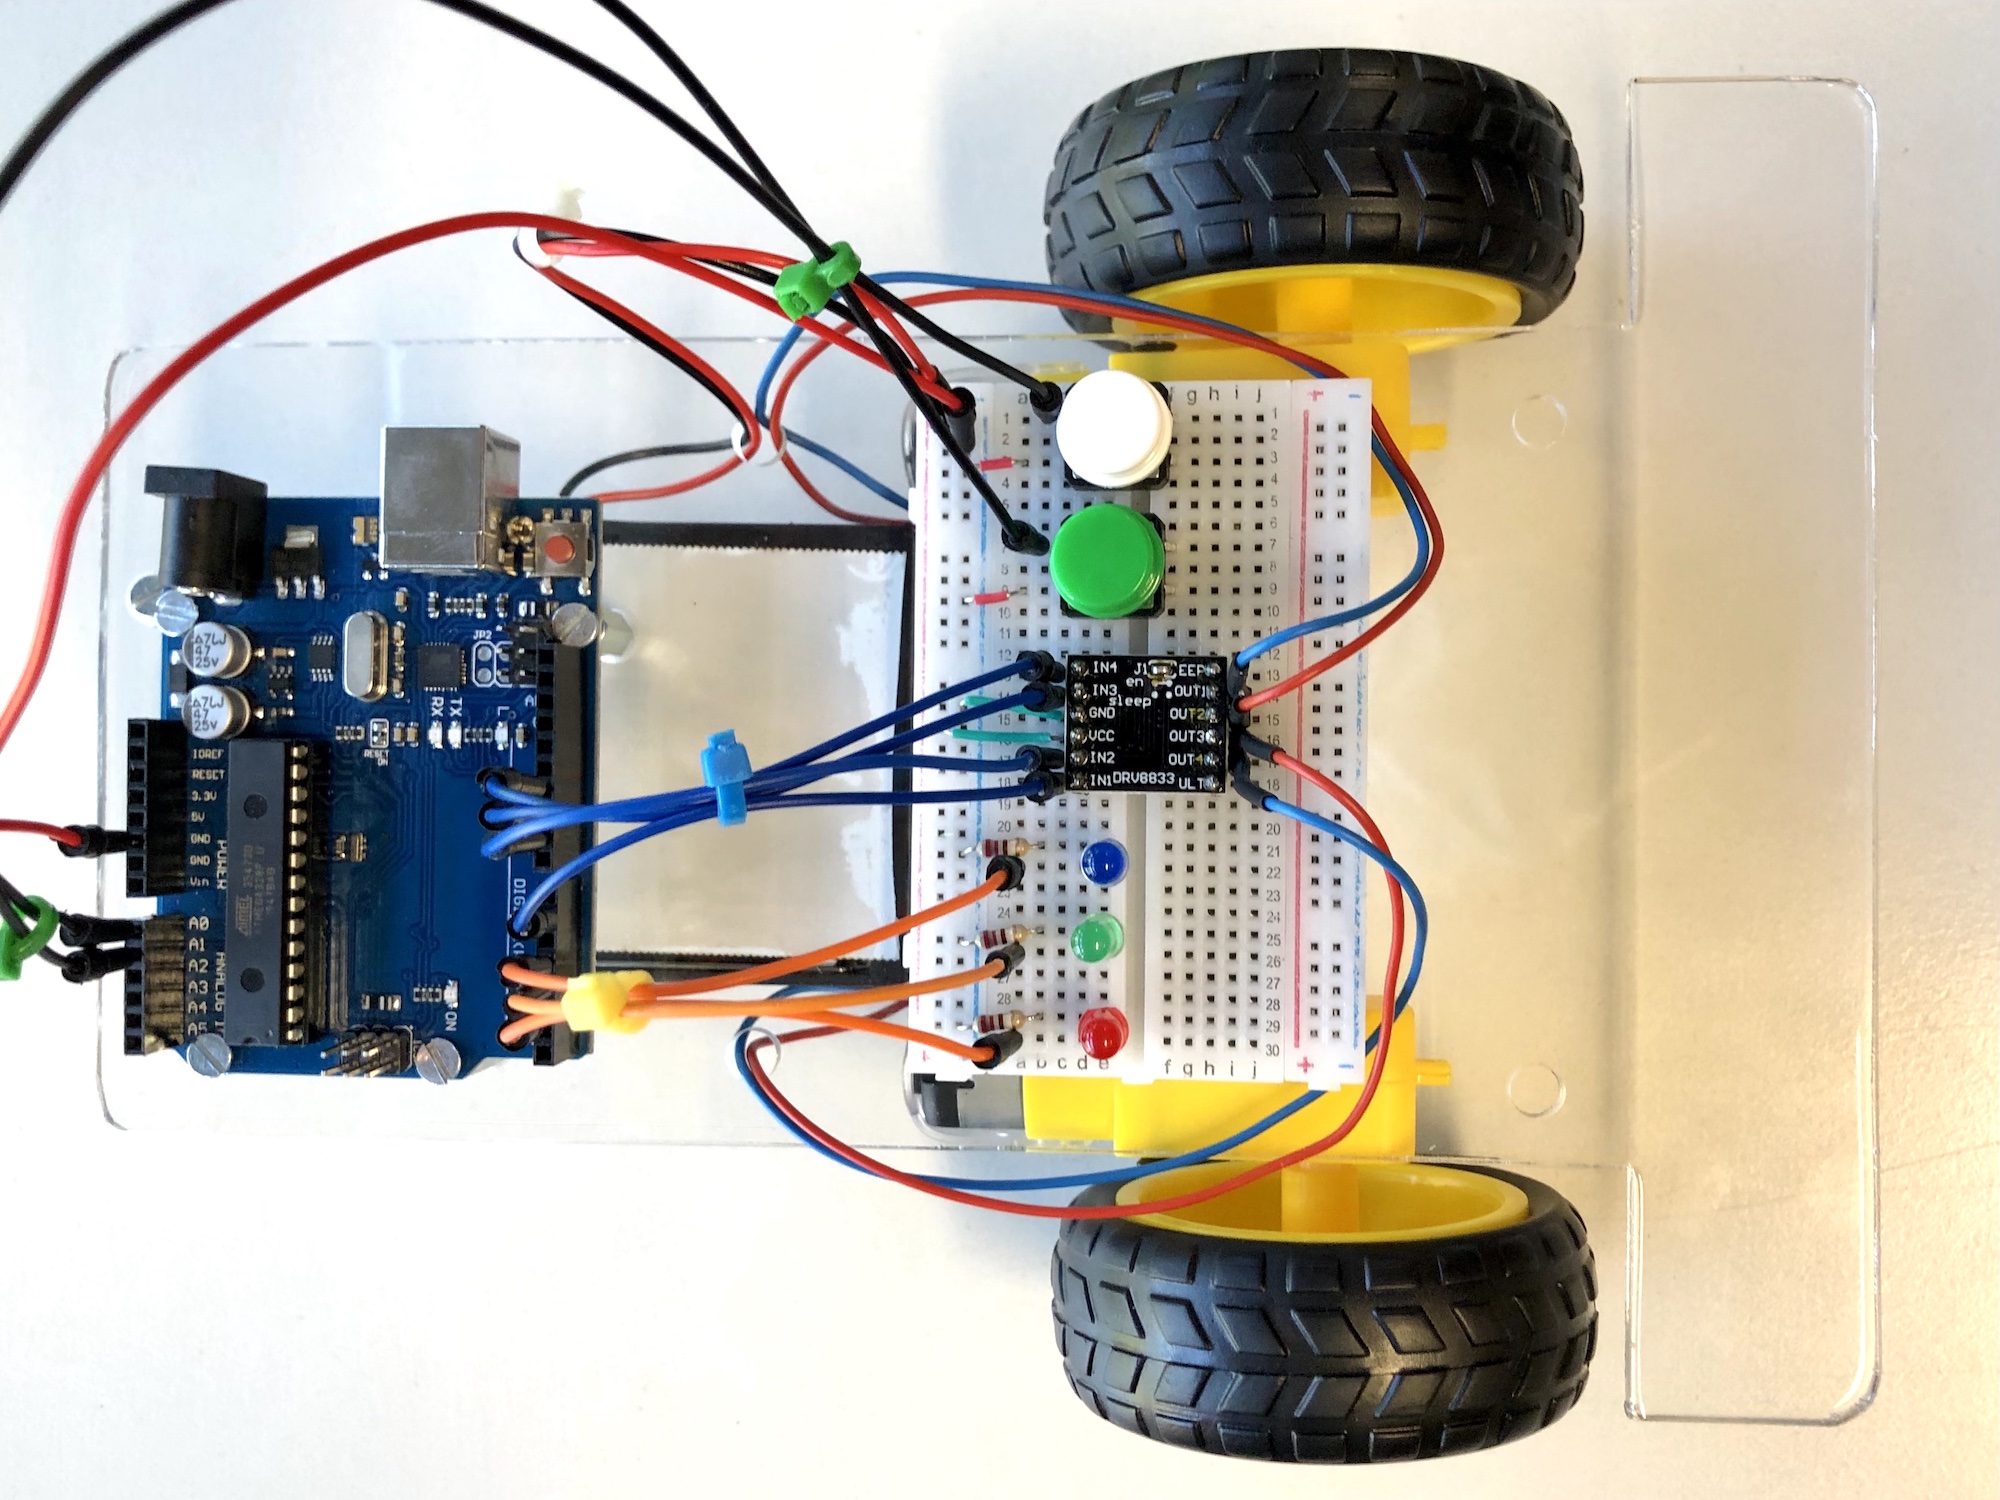 Selbst gebauter Arduino-Roboter mit differentiellem Antrieb